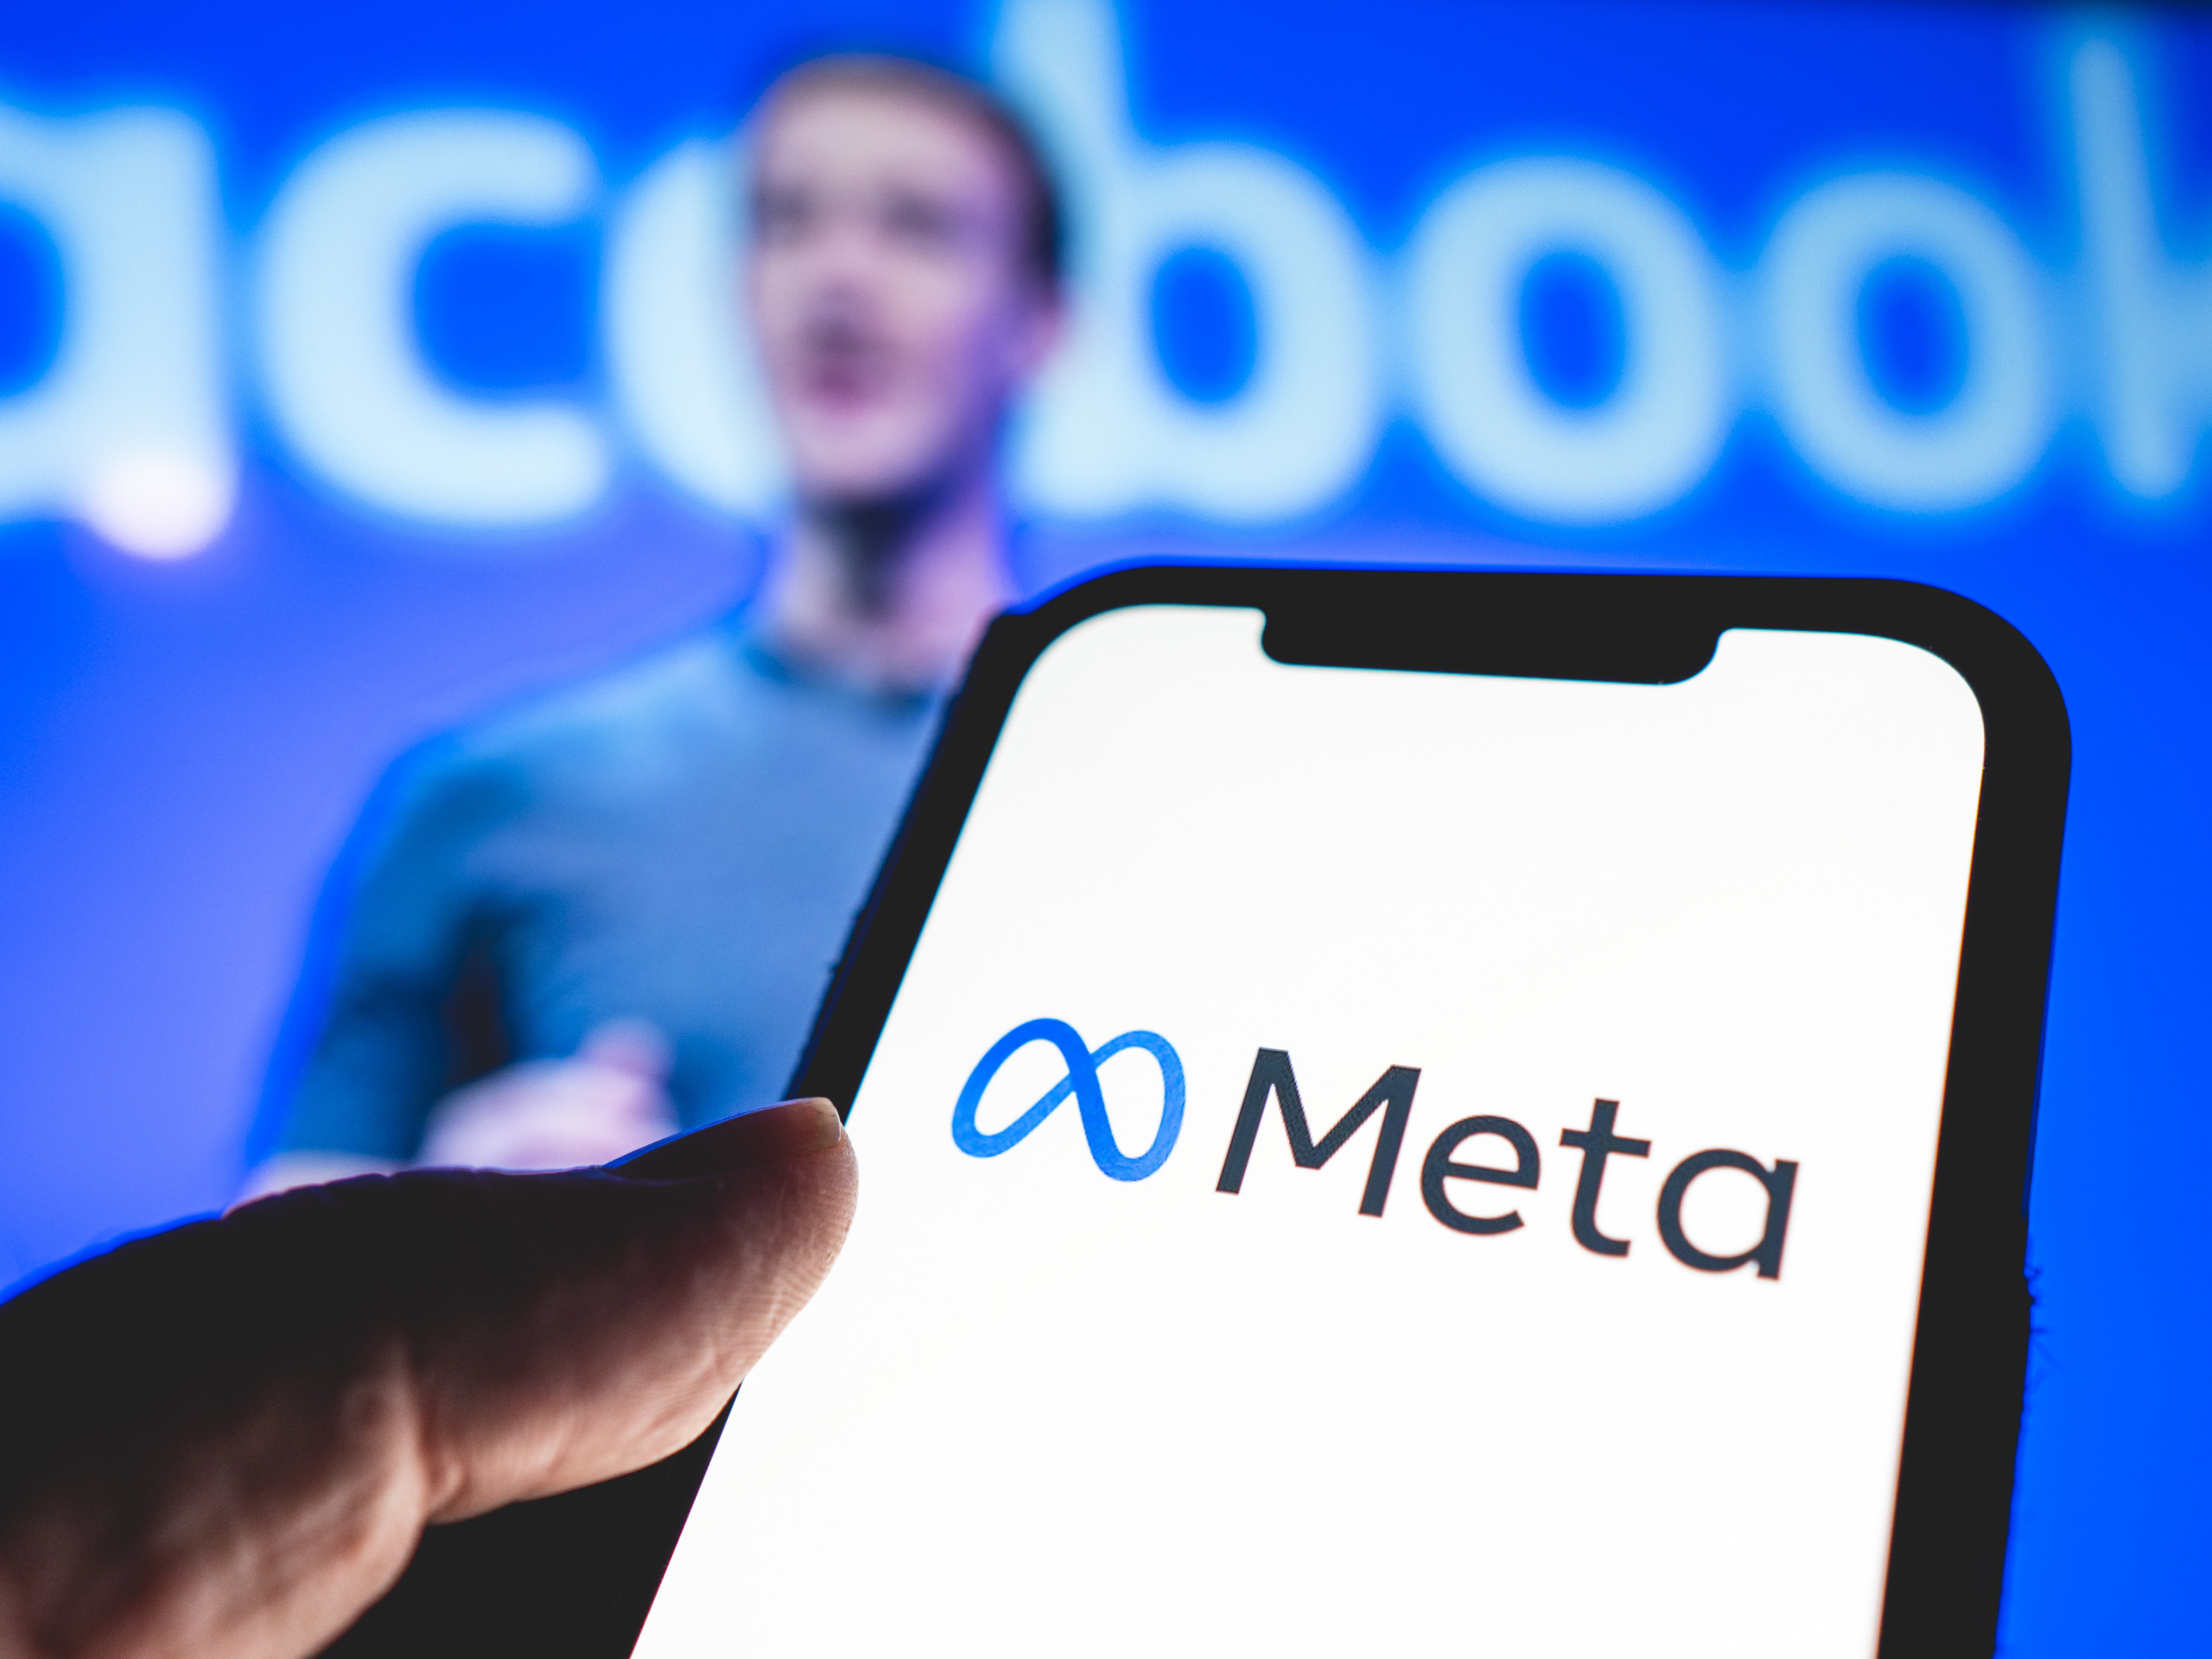 Meta plant massive Investitionen, um Meta AI zum weltweit führenden KI-Dienst zu machen; Zuckerberg erwartet volatile Phase